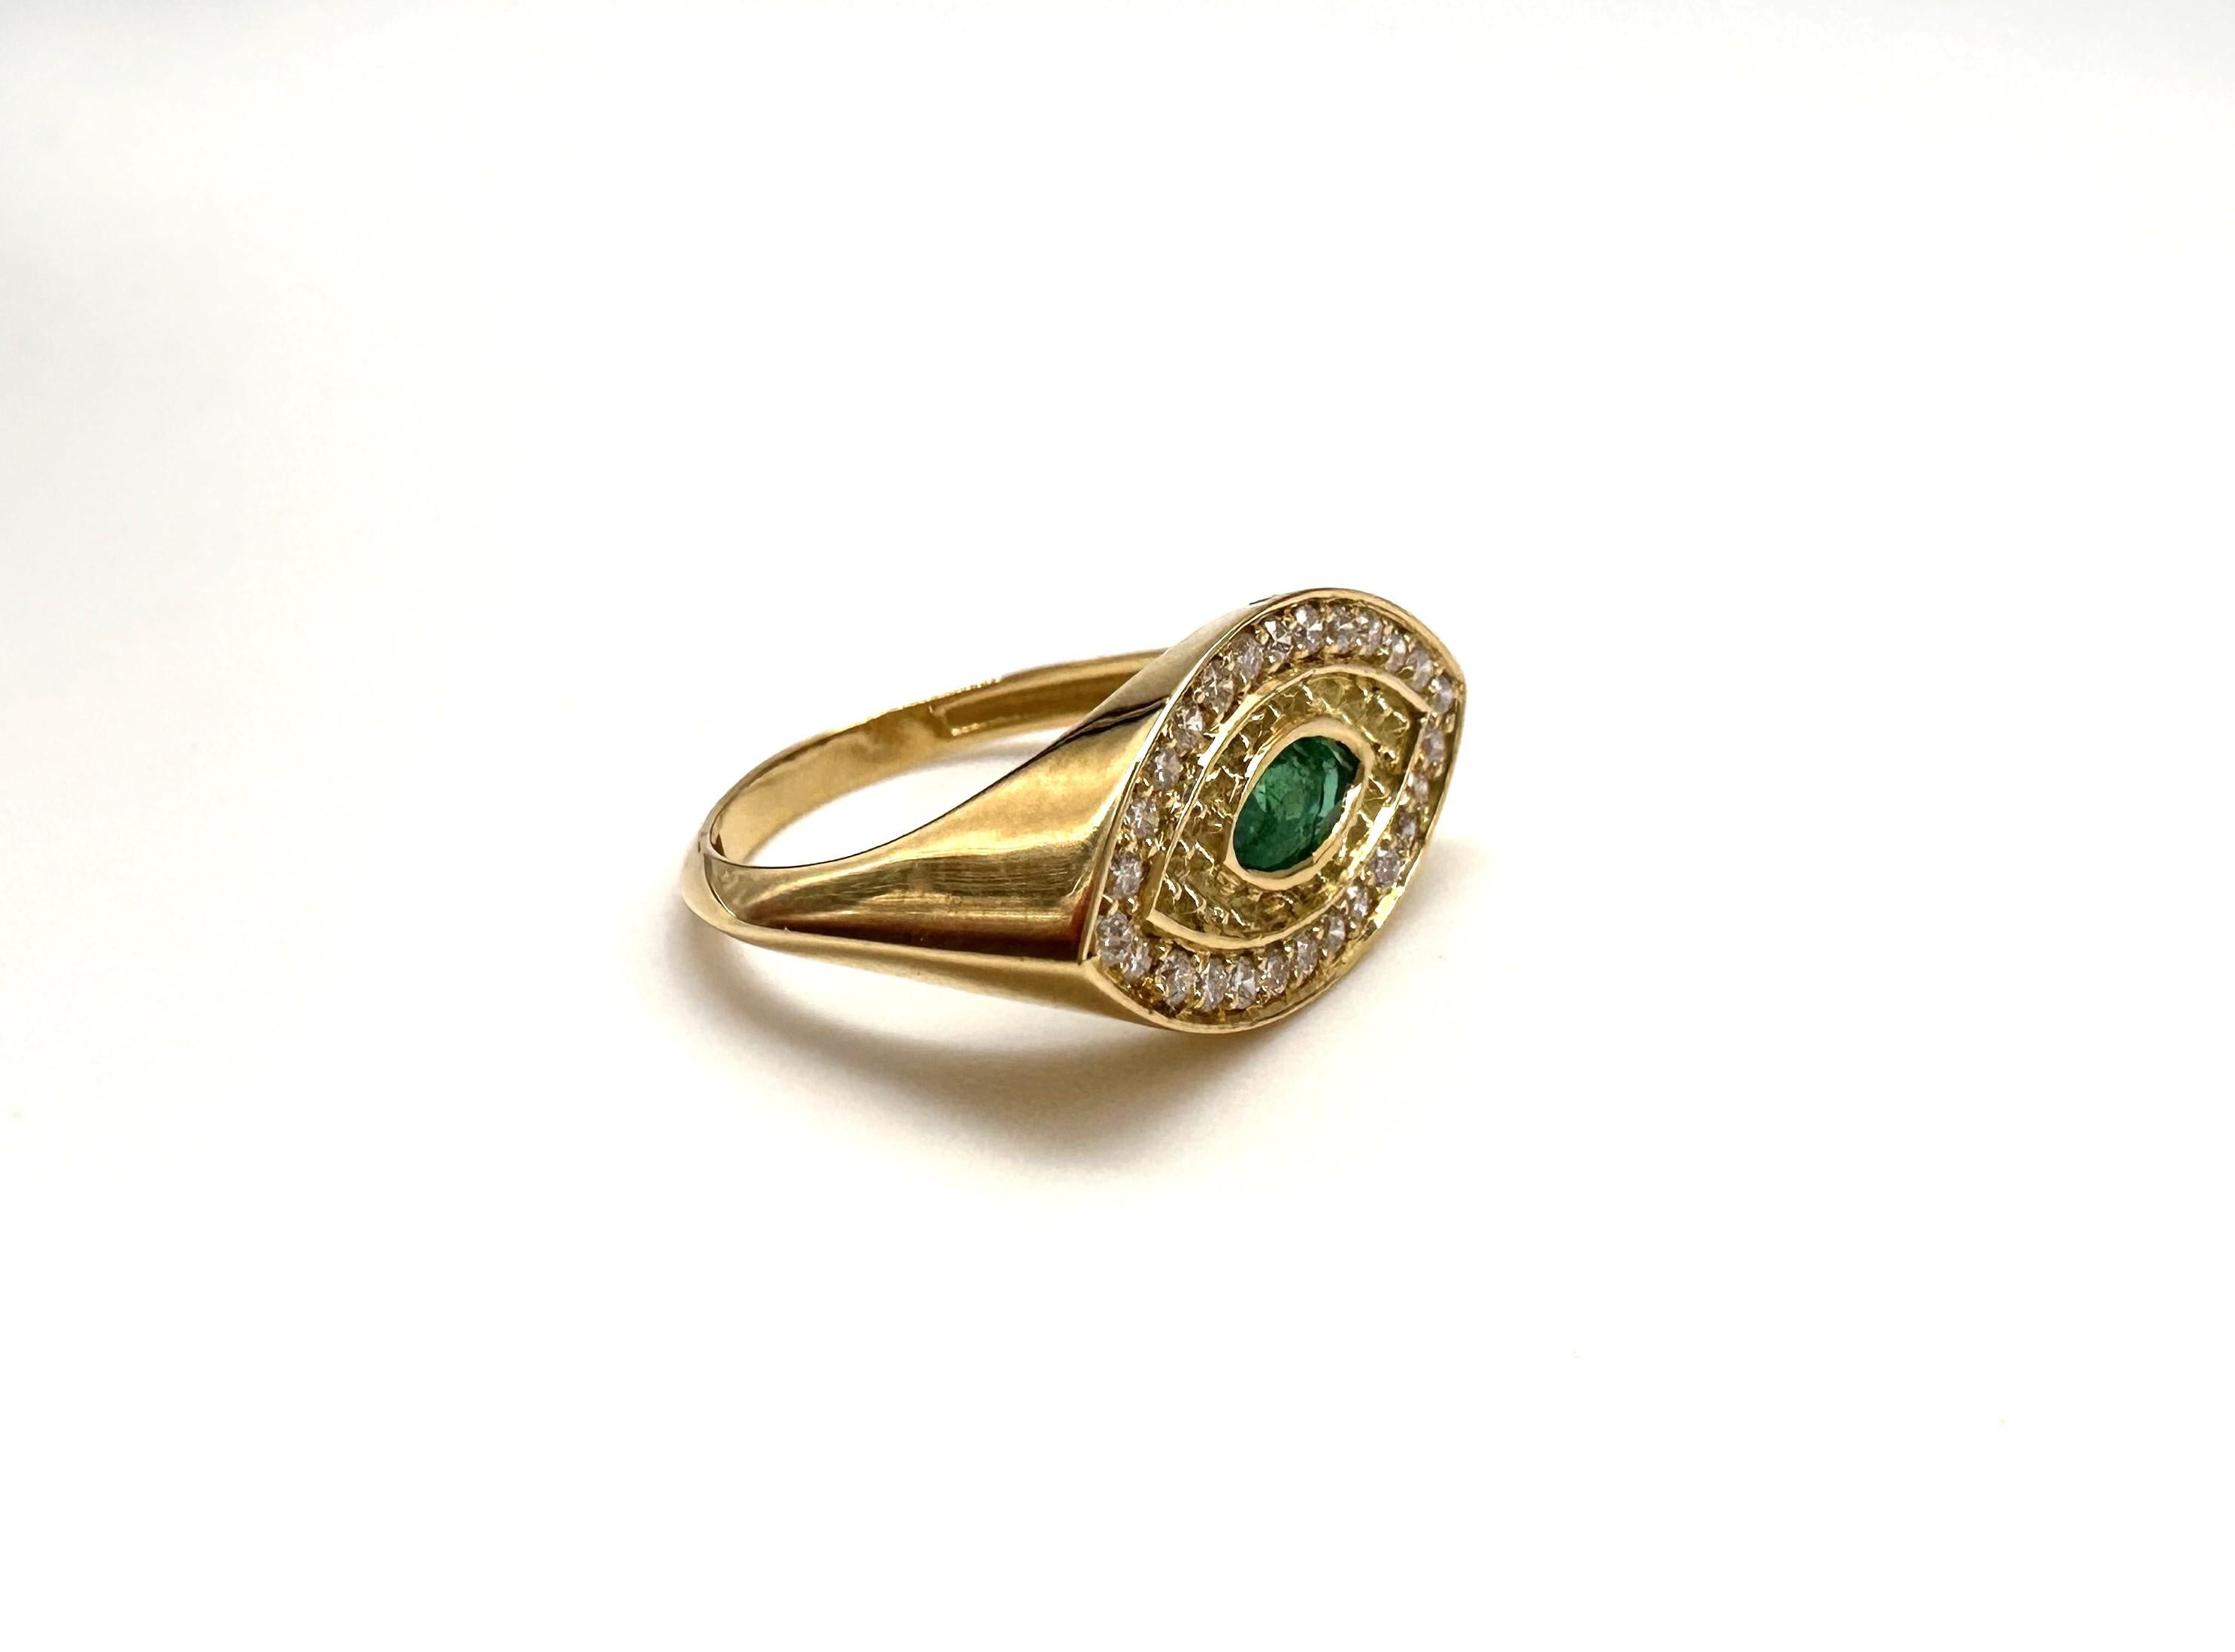 Dieser in 3D-Programmierung entworfene Ring in Form eines Griechischen Auges hat einen 6x3 mm großen Smaragd im Navete-Schliff als zentralen Stein, der von kleinen Goldspitzen und 26 Diamanten mit einem Durchmesser von 1,2 mm mit insgesamt 0,208